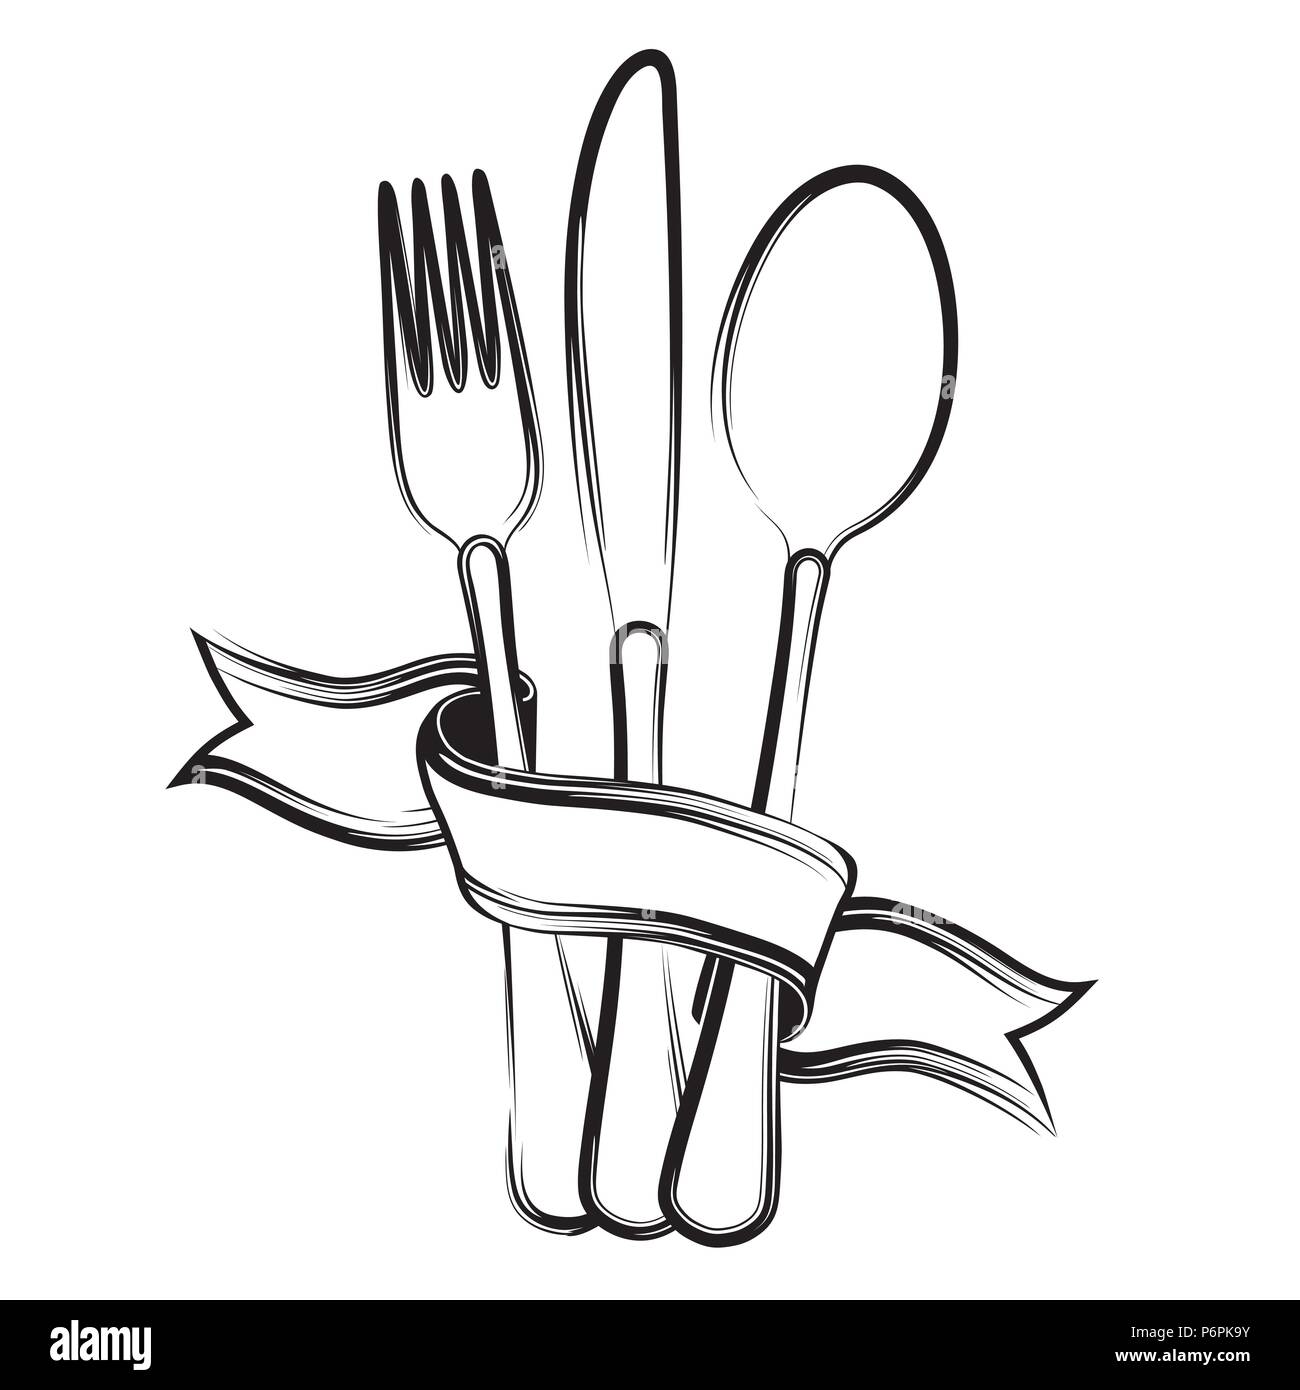 Ruban, cuillère, fourchette et couteau sur un fond blanc.Le noir et blanc Illustration de Vecteur